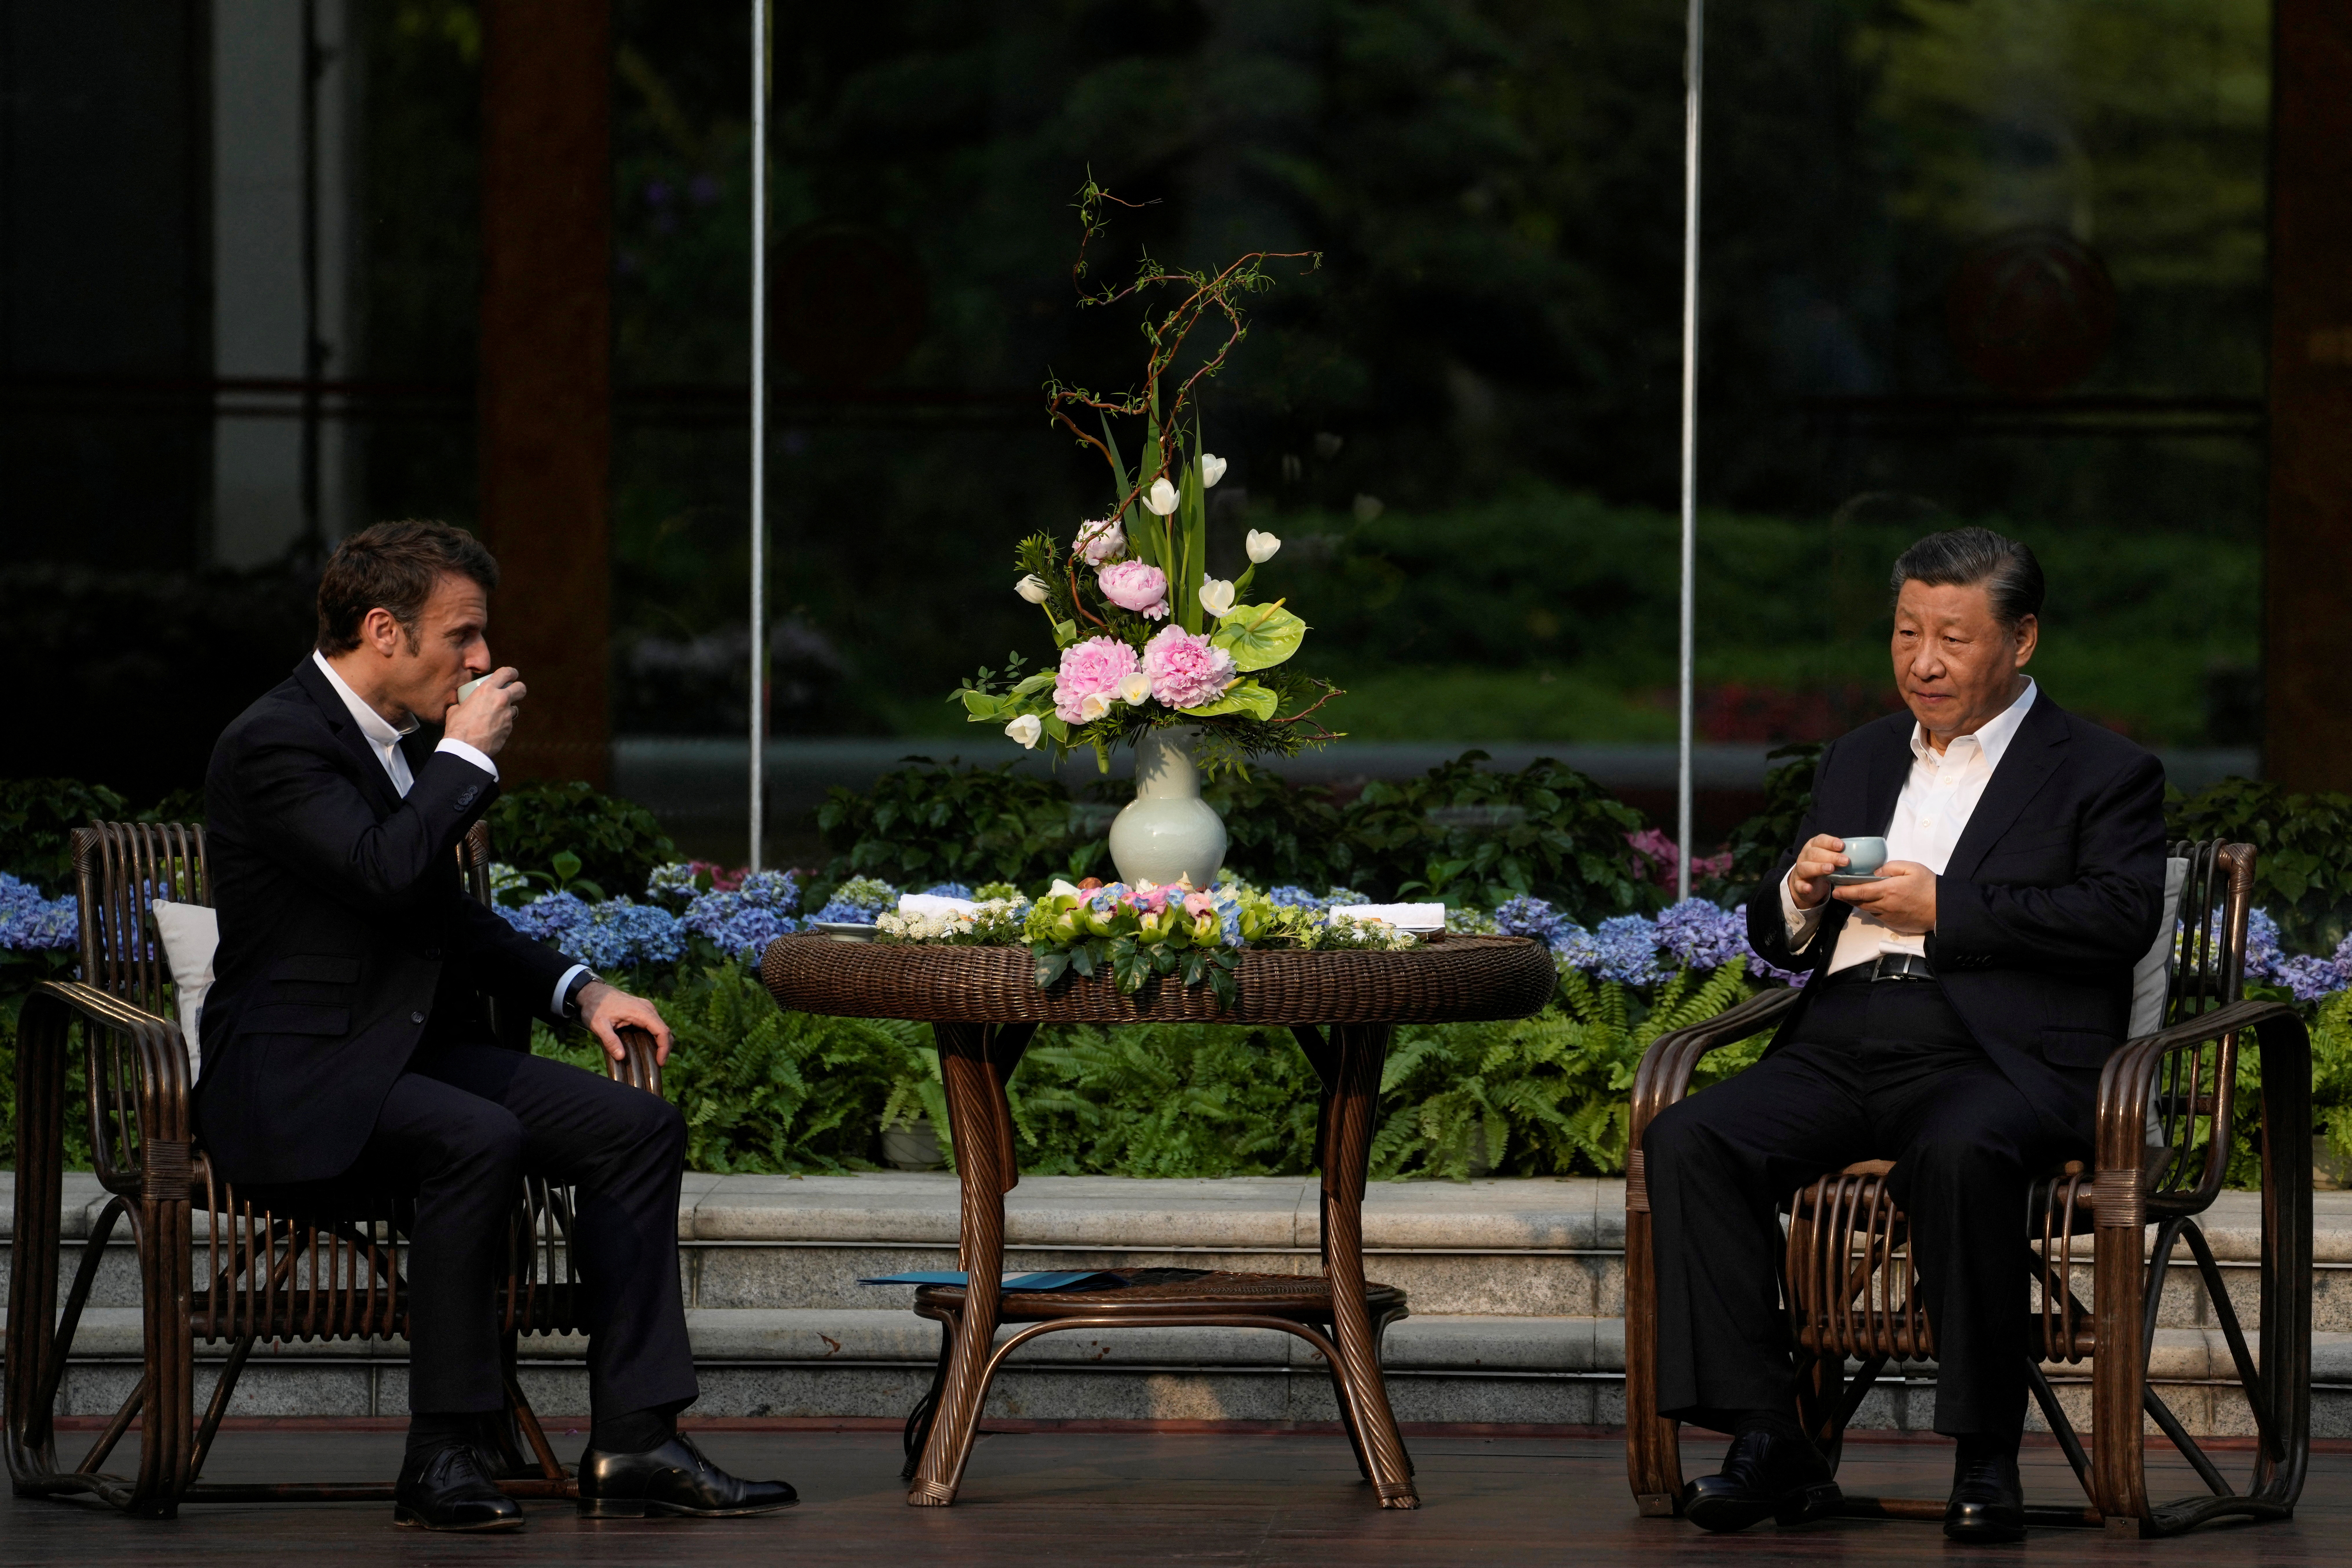 Emmanuel Macron toma el té junto al jefe del régimen chino, Xi Jinping, en Guangzhou, China durante su visita de estado el pasado 7 de abril. El francés fue criticado por su postura respecto a Taiwán (Reuters)